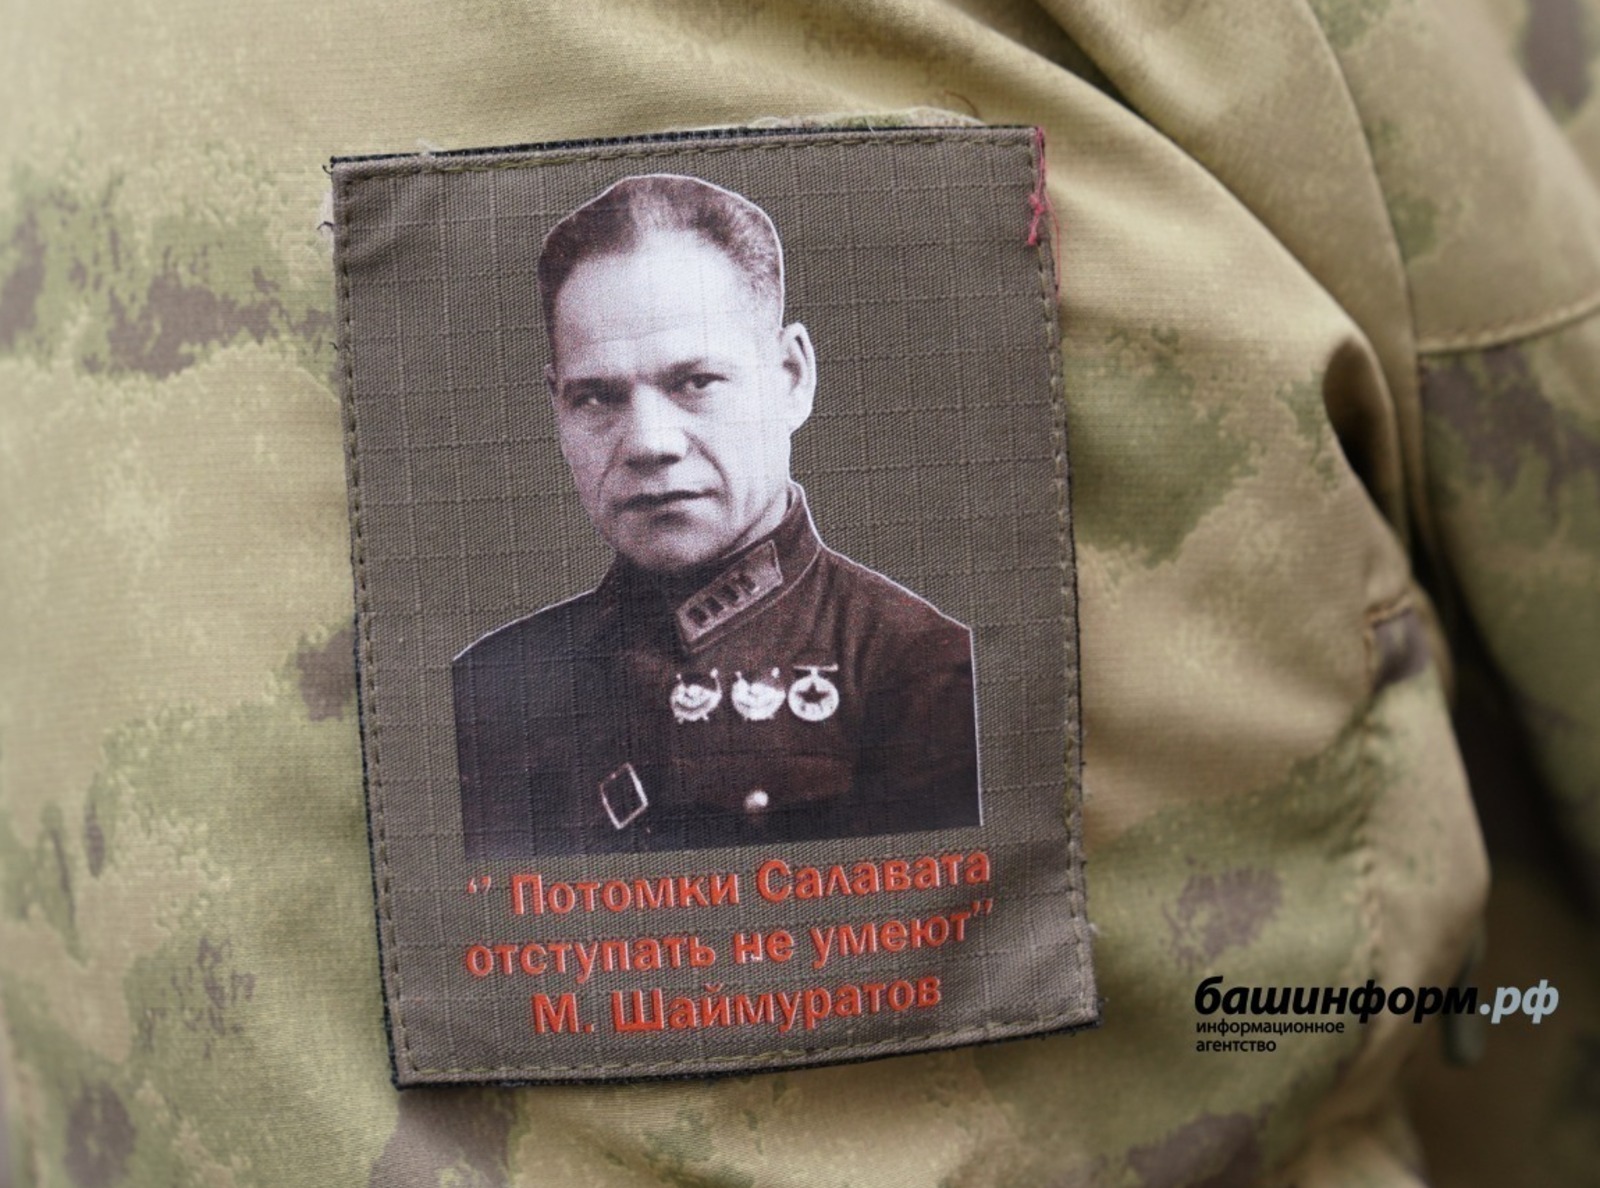 Песня «Шаймуратов-генерал» стала эмблемой бойцов СВО из Башкортостана